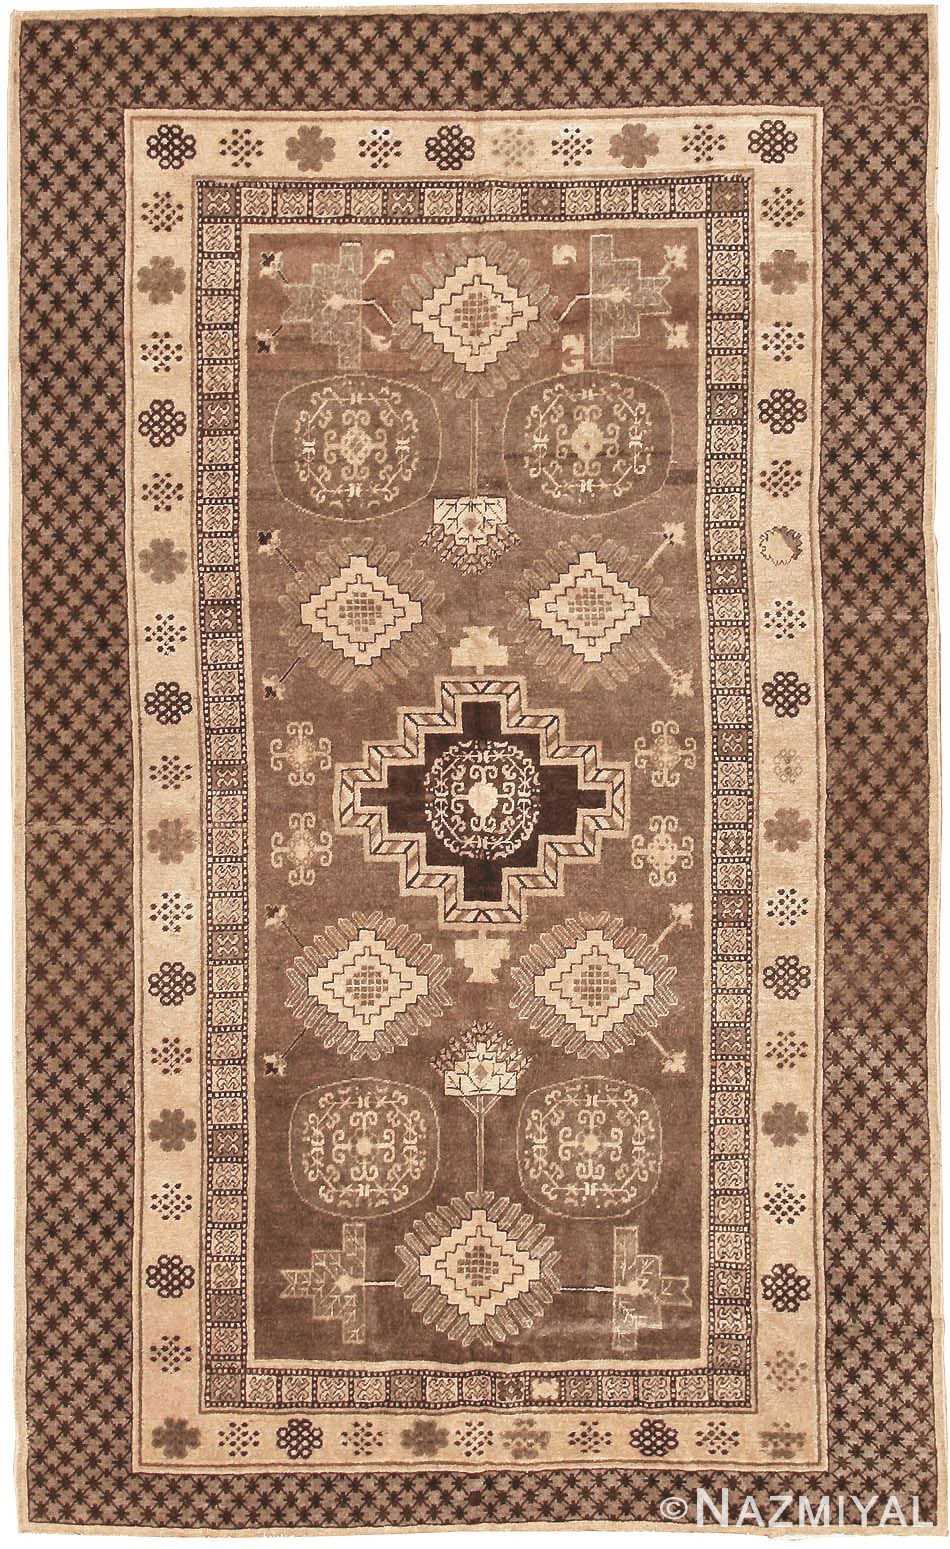 Brown and Tan Antique Khotan Rug 42529 by Nazmiyal NYC